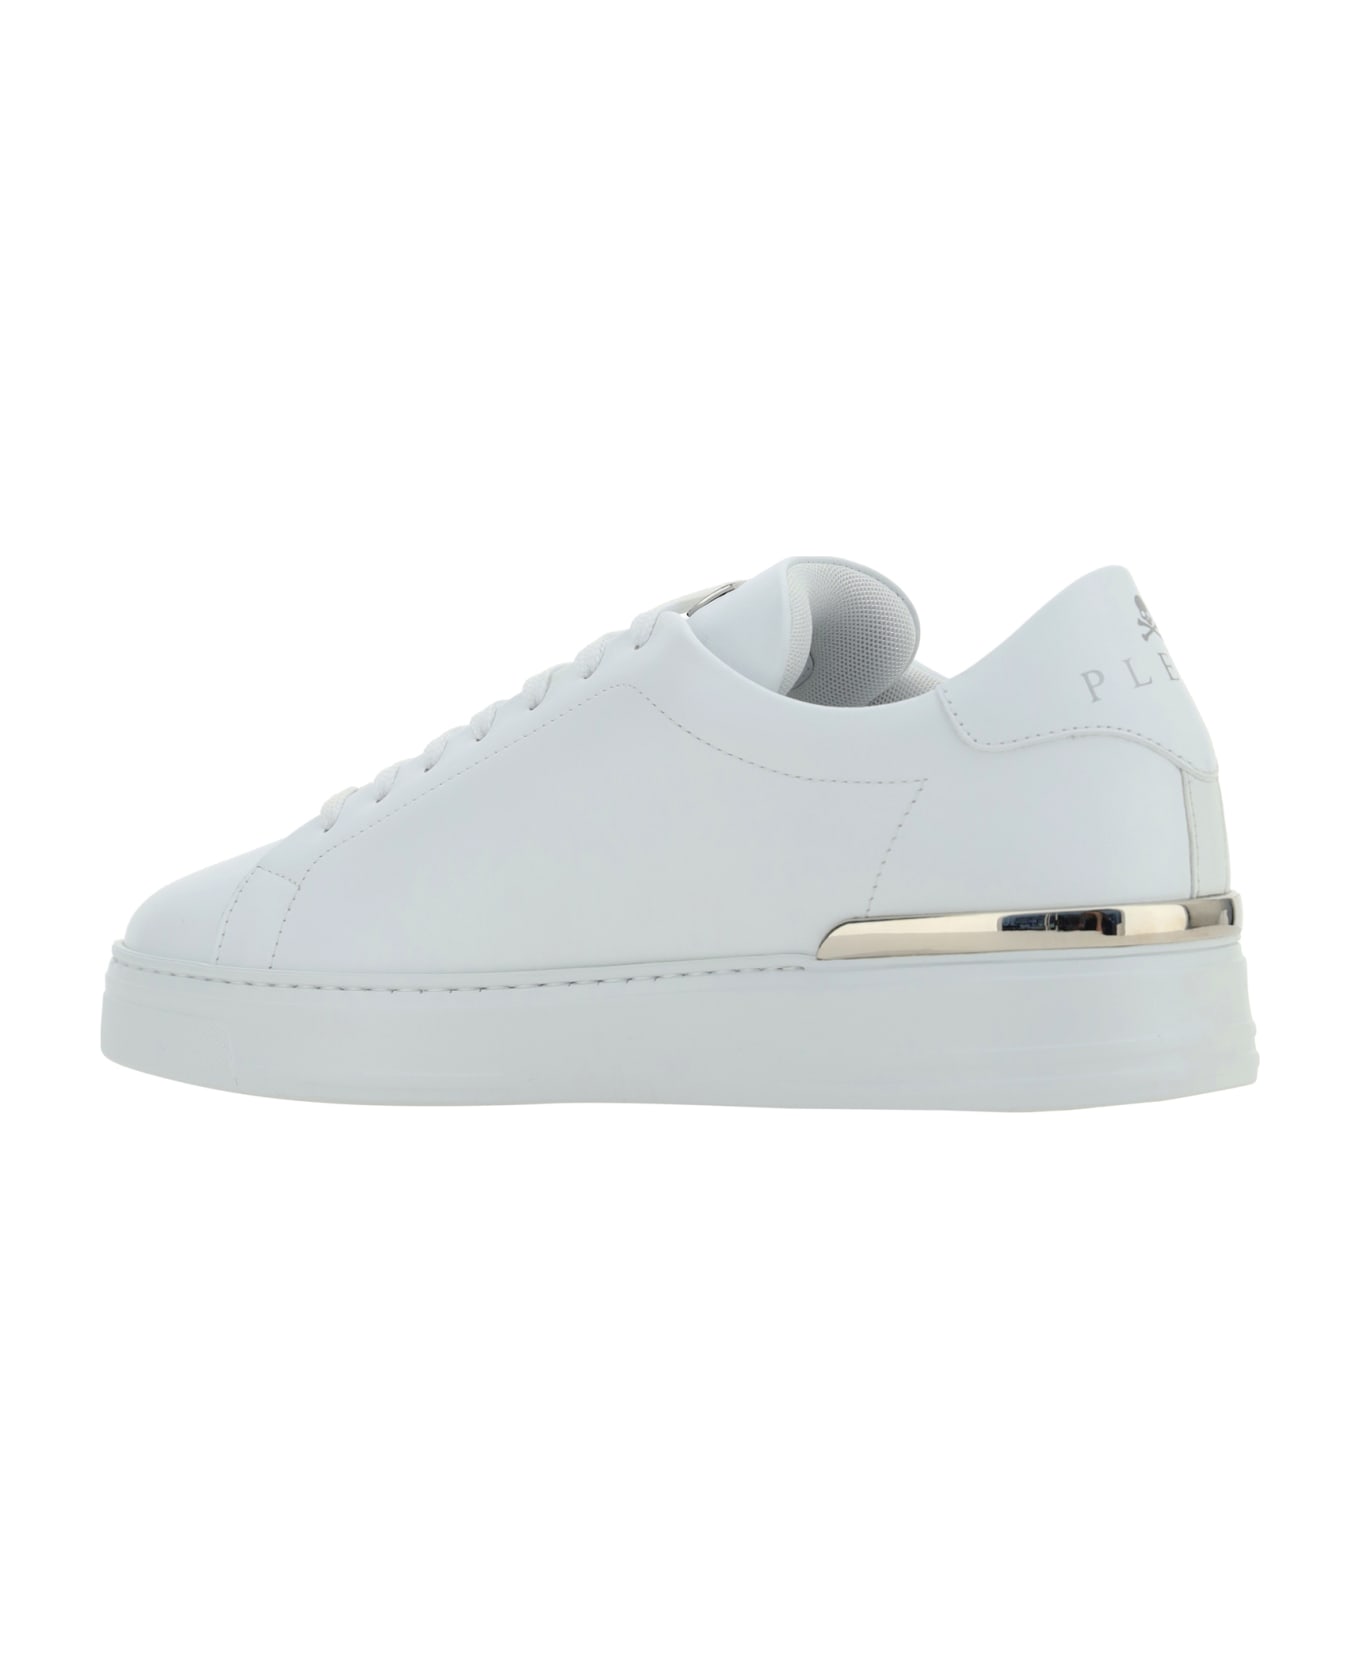 Philipp Plein Hexagon Low Top Sneakers - White